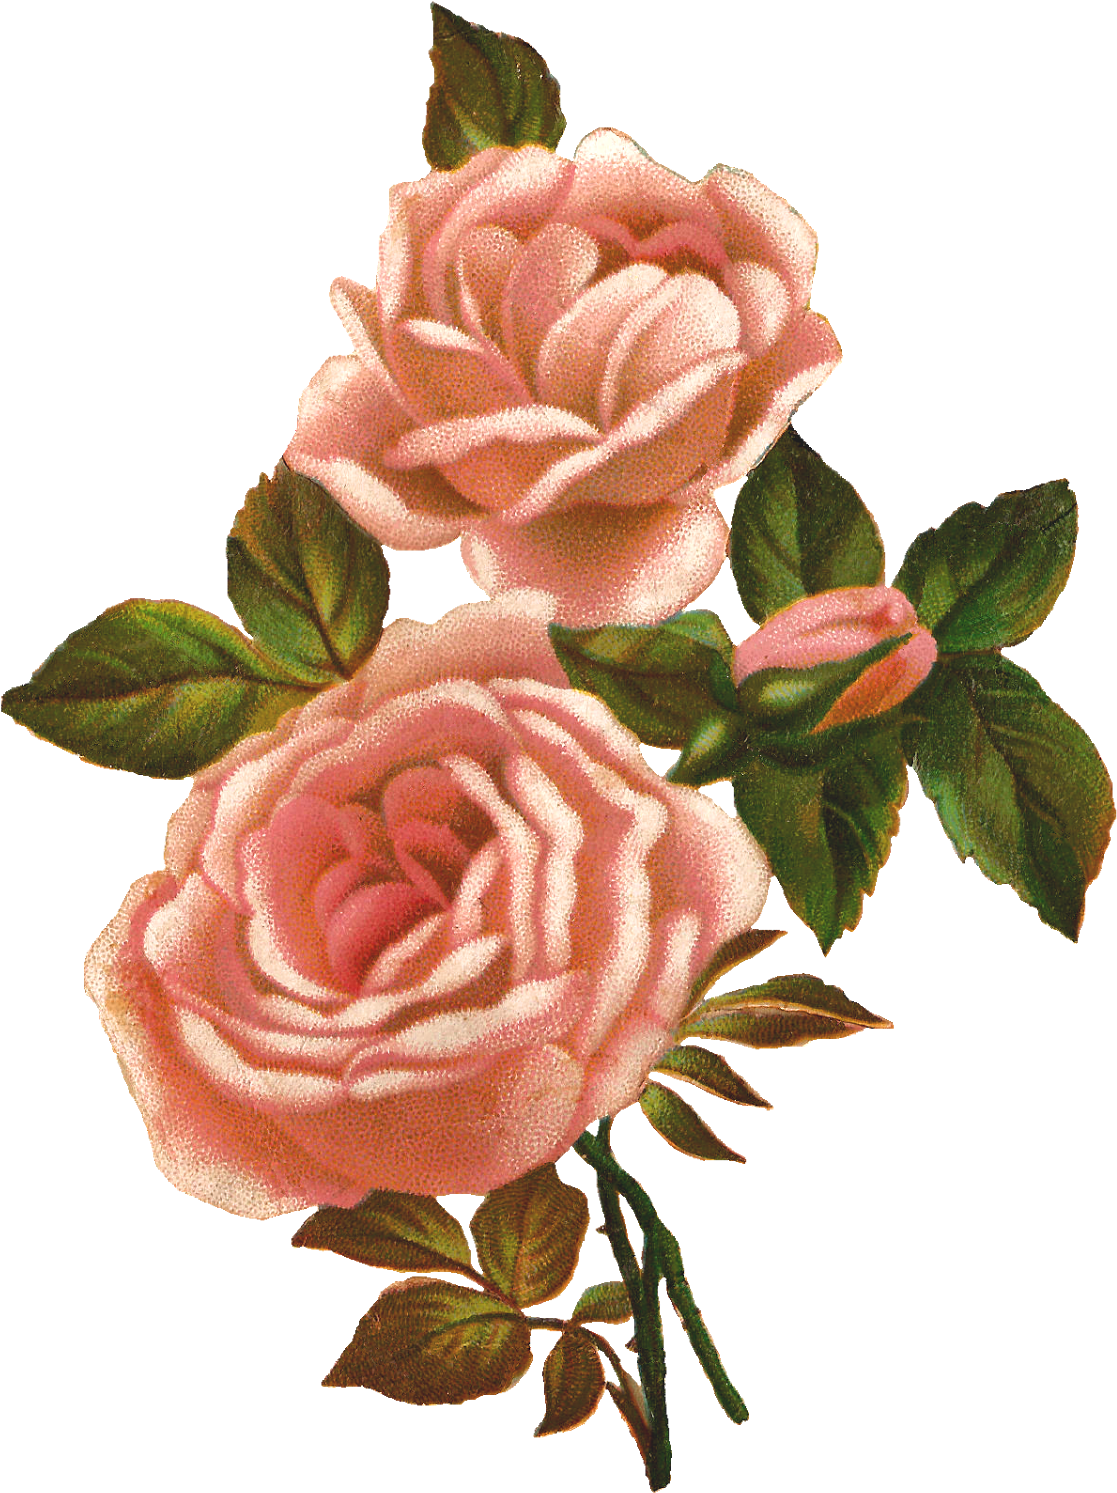 Vintage Pink Roses Illustration